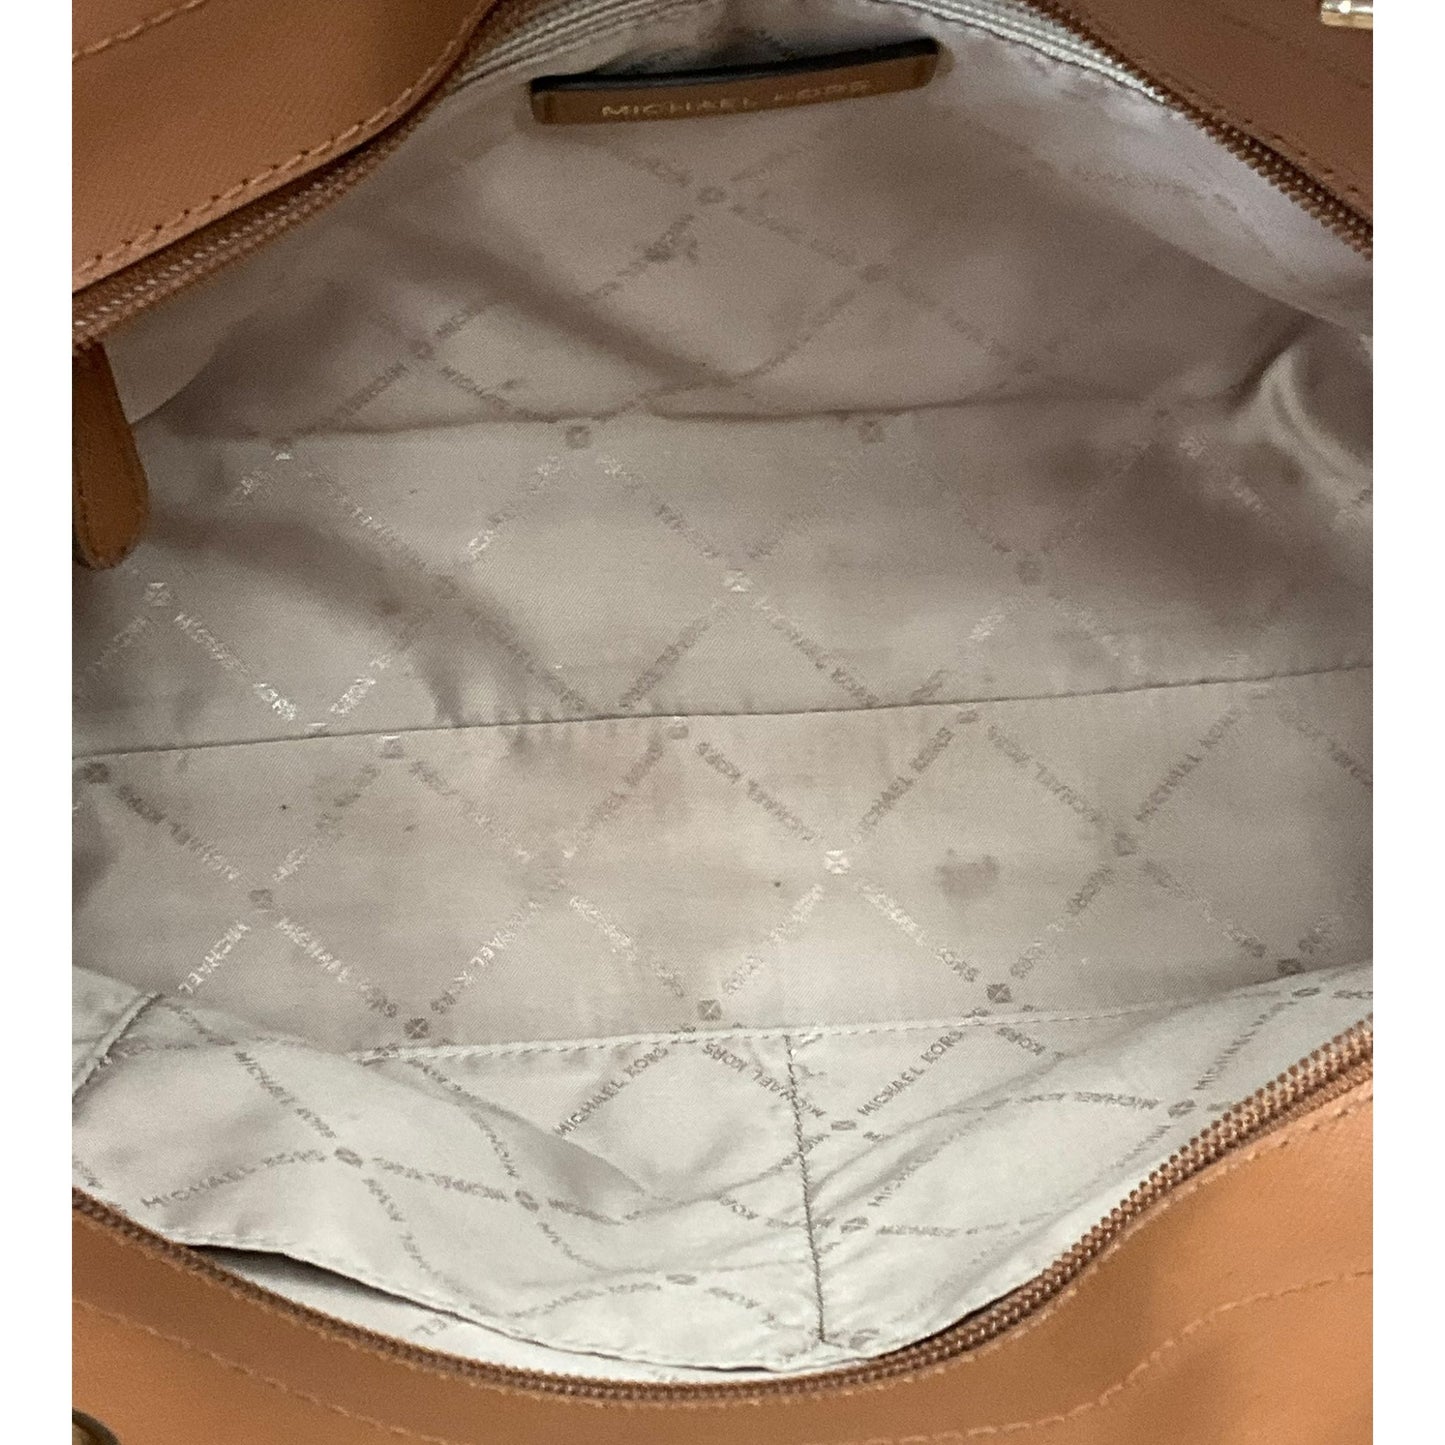 White Handbag Designer Michael Kors, Size Large